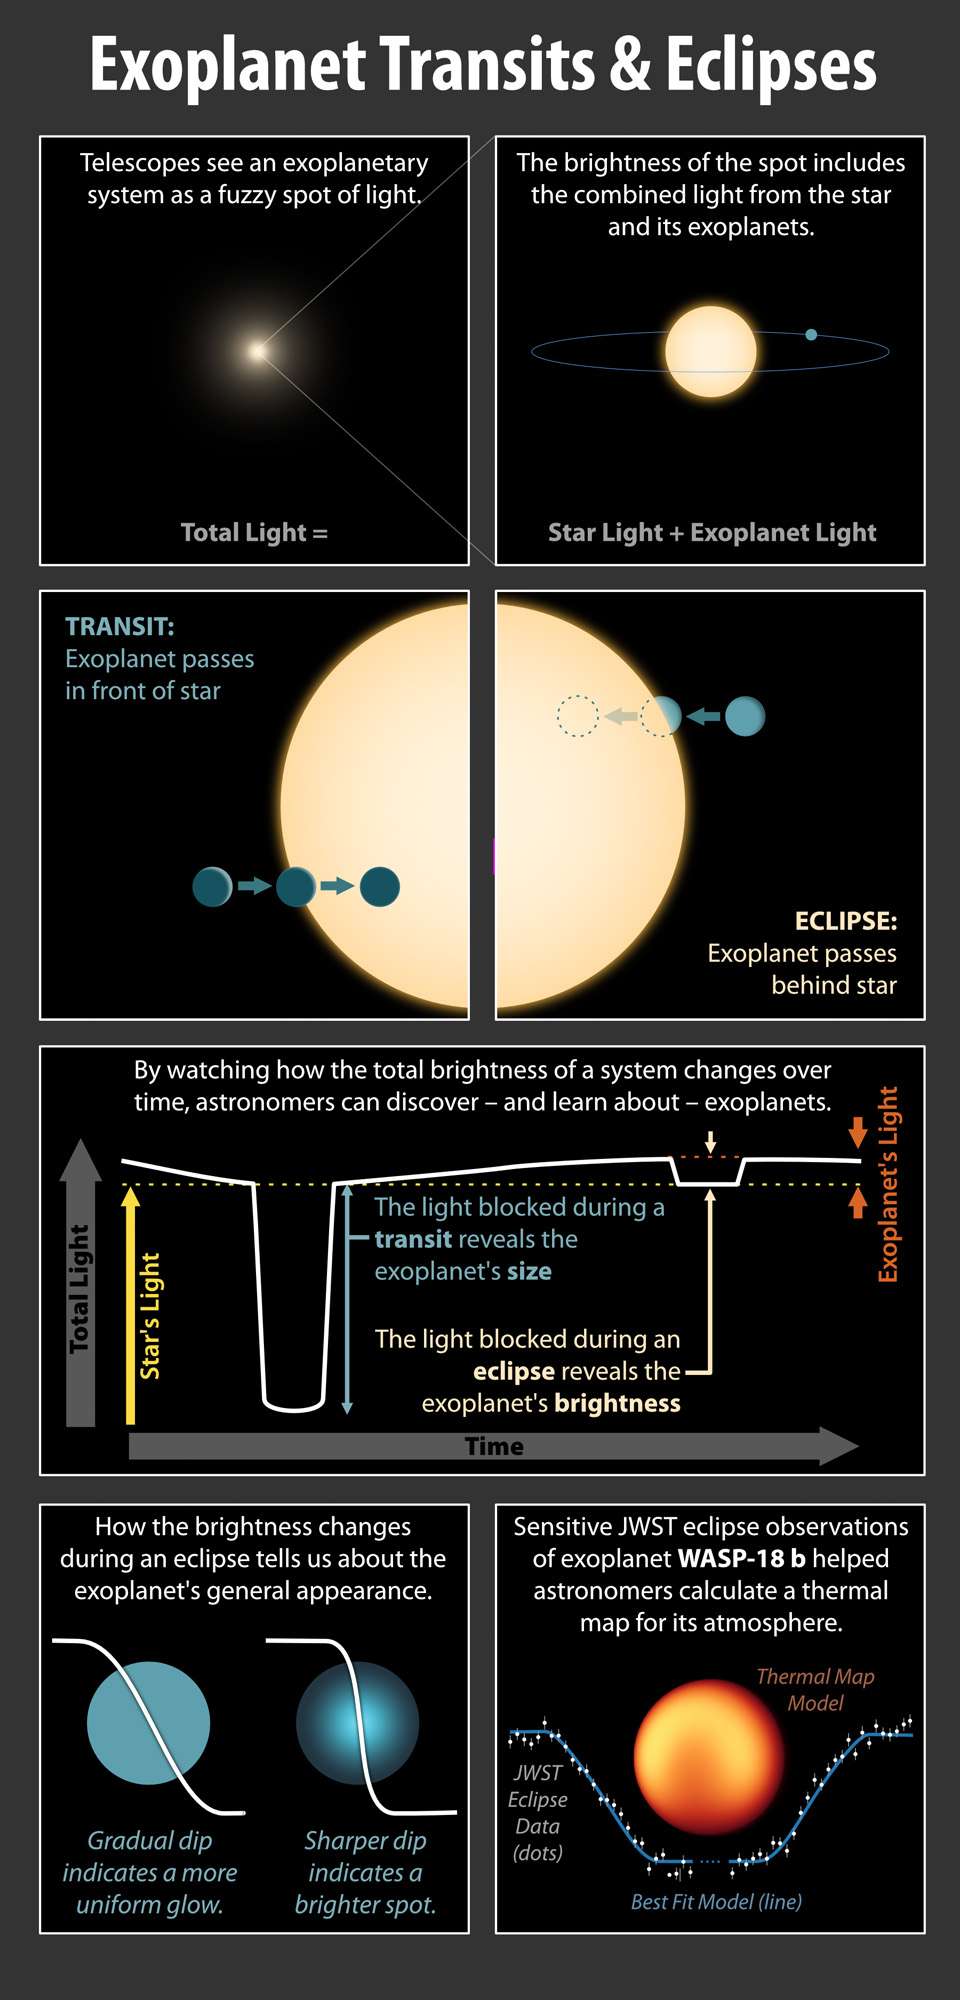 Les scientifiques ont utilisé le télescope spatial James-Webb pour observer l'exoplanète WASP-18 b et son étoile avant, pendant et après l'éclipse de la planète. En mesurant le changement de lumière lorsque la planète se déplace derrière l'étoile, la luminosité de la planète est révélée. À partir de ces mesures, les scientifiques ont pu dresser une carte des températures du côté jour de la planète. Plage de température affichée : 1 500 à 2 600 degrés Celsius. © Nasa/JPL-Caltech (R. Hurt/IPAC)